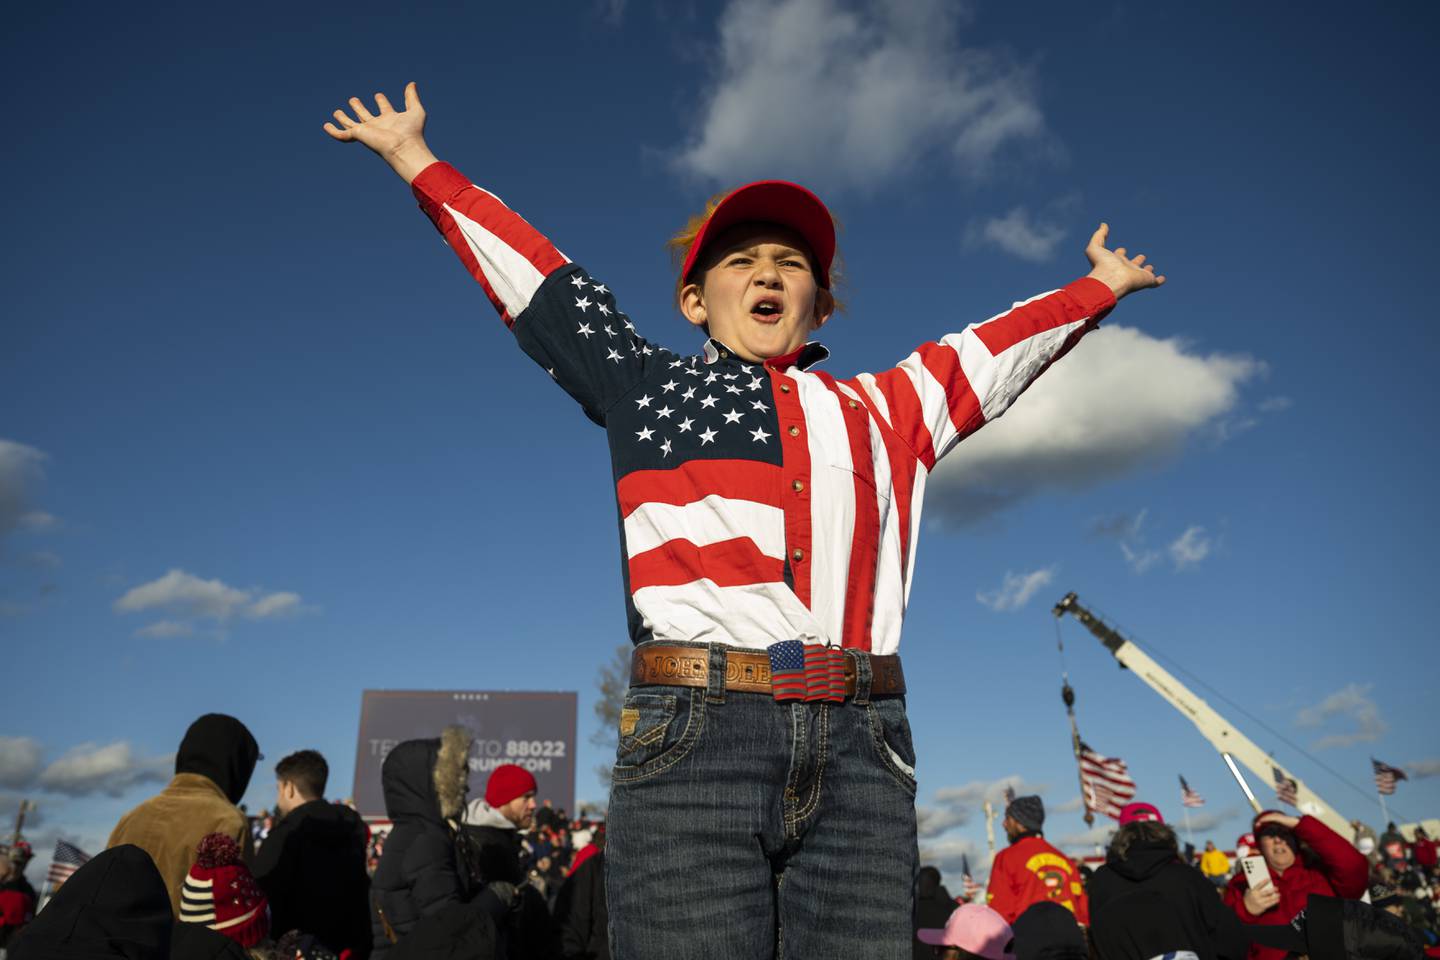 Elleve år gamle Ethan Brozman la ikke skjul på sin entusiasme da Donald Trump besøkte Schnecksville i Pennsylvania tidligere i måneden. Foto: AP / NTB